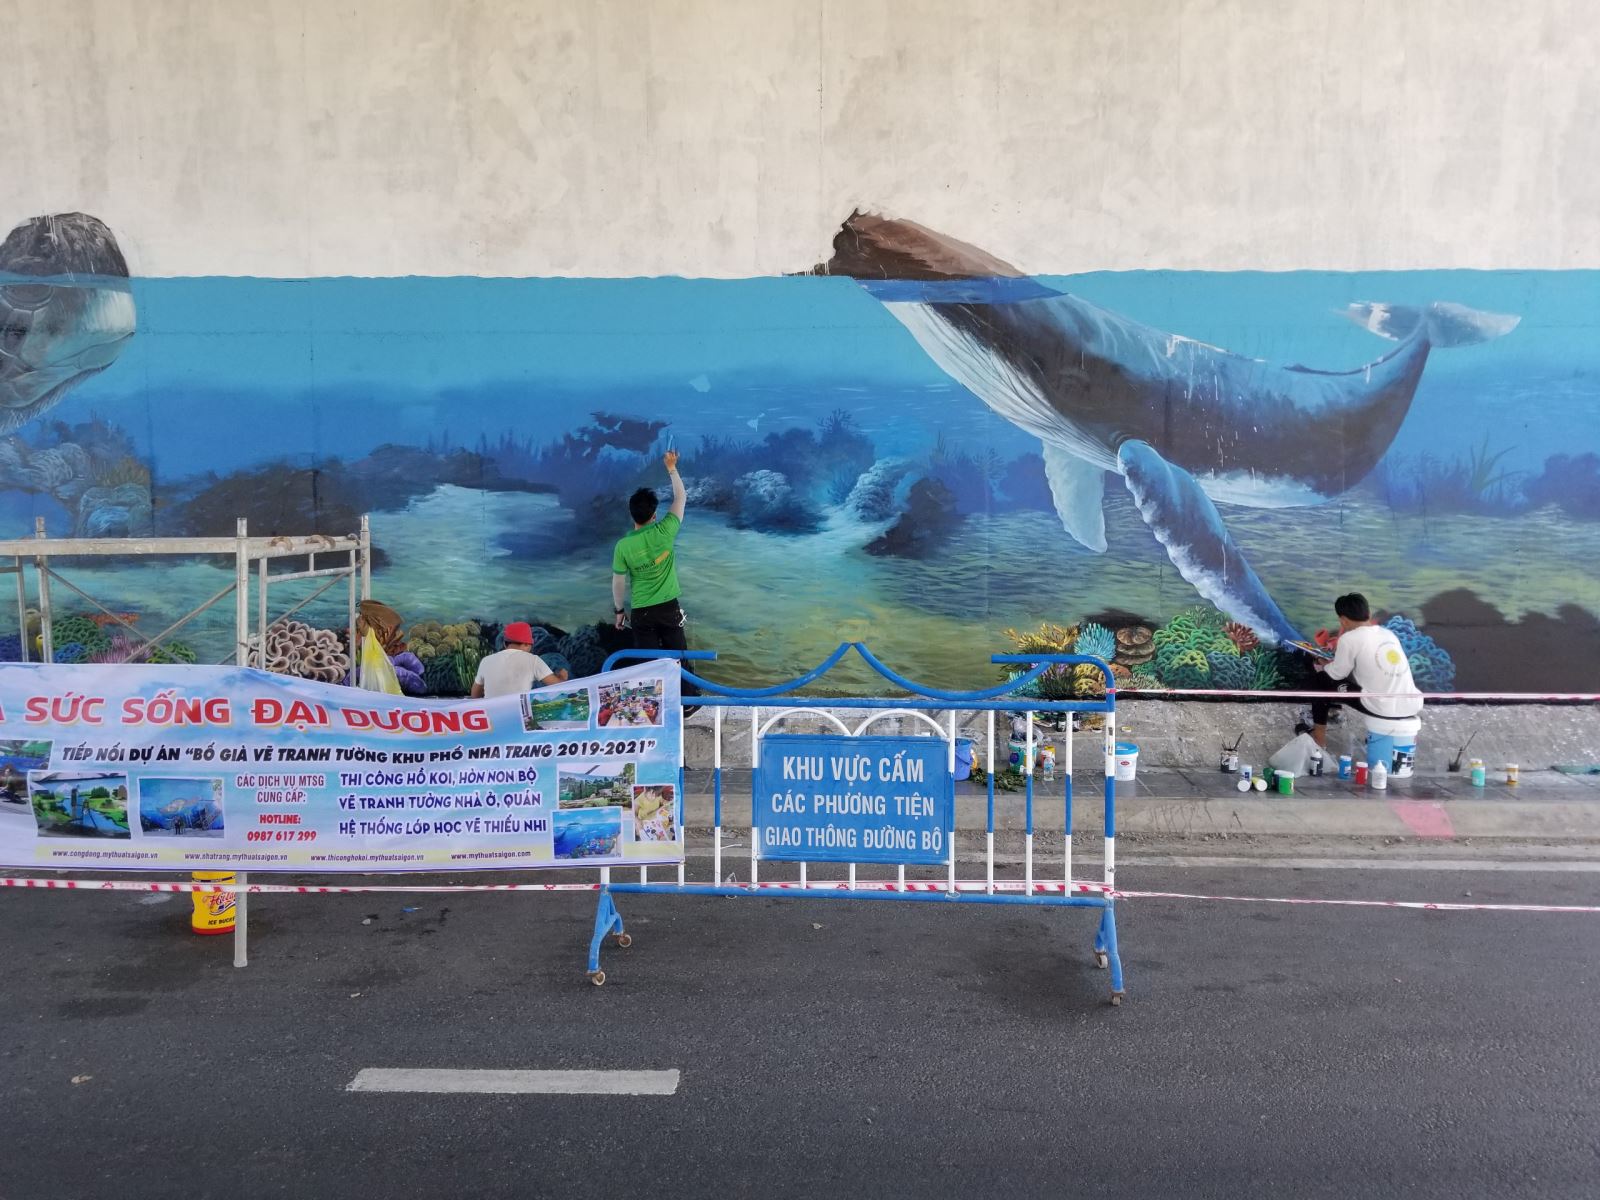 Bố Già vẽ tranh tường khu phố miễn phí Nha Trang - bích họa đại dương